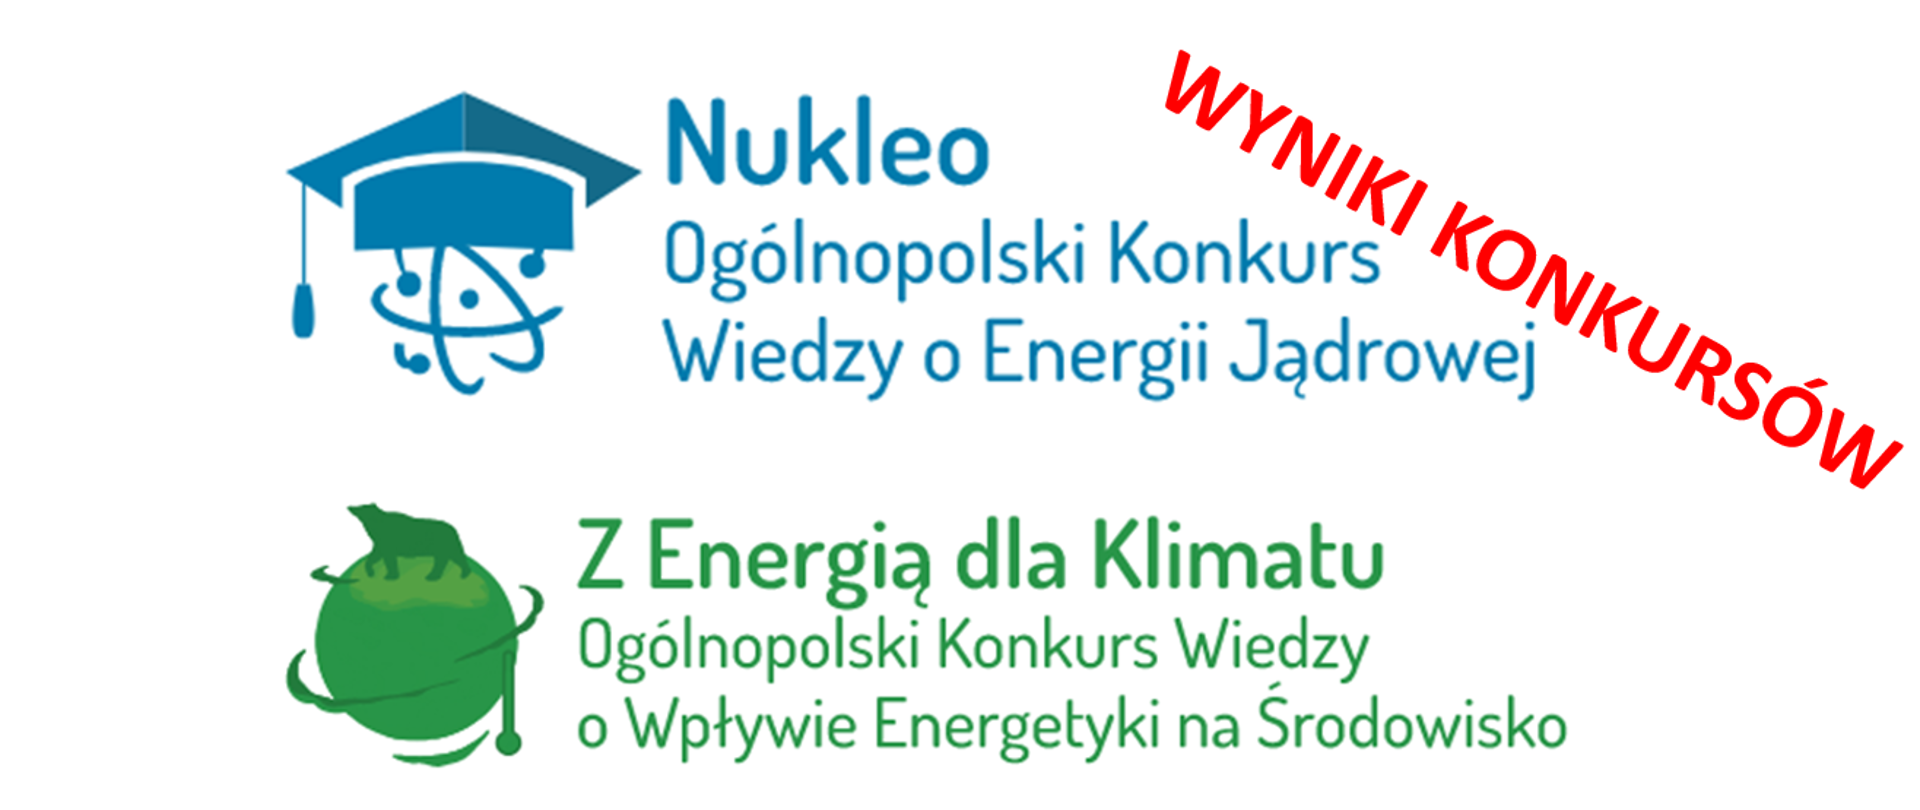 Wyniki konkursów "Nukleo" oraz "Z Energią dla Klimatu" 